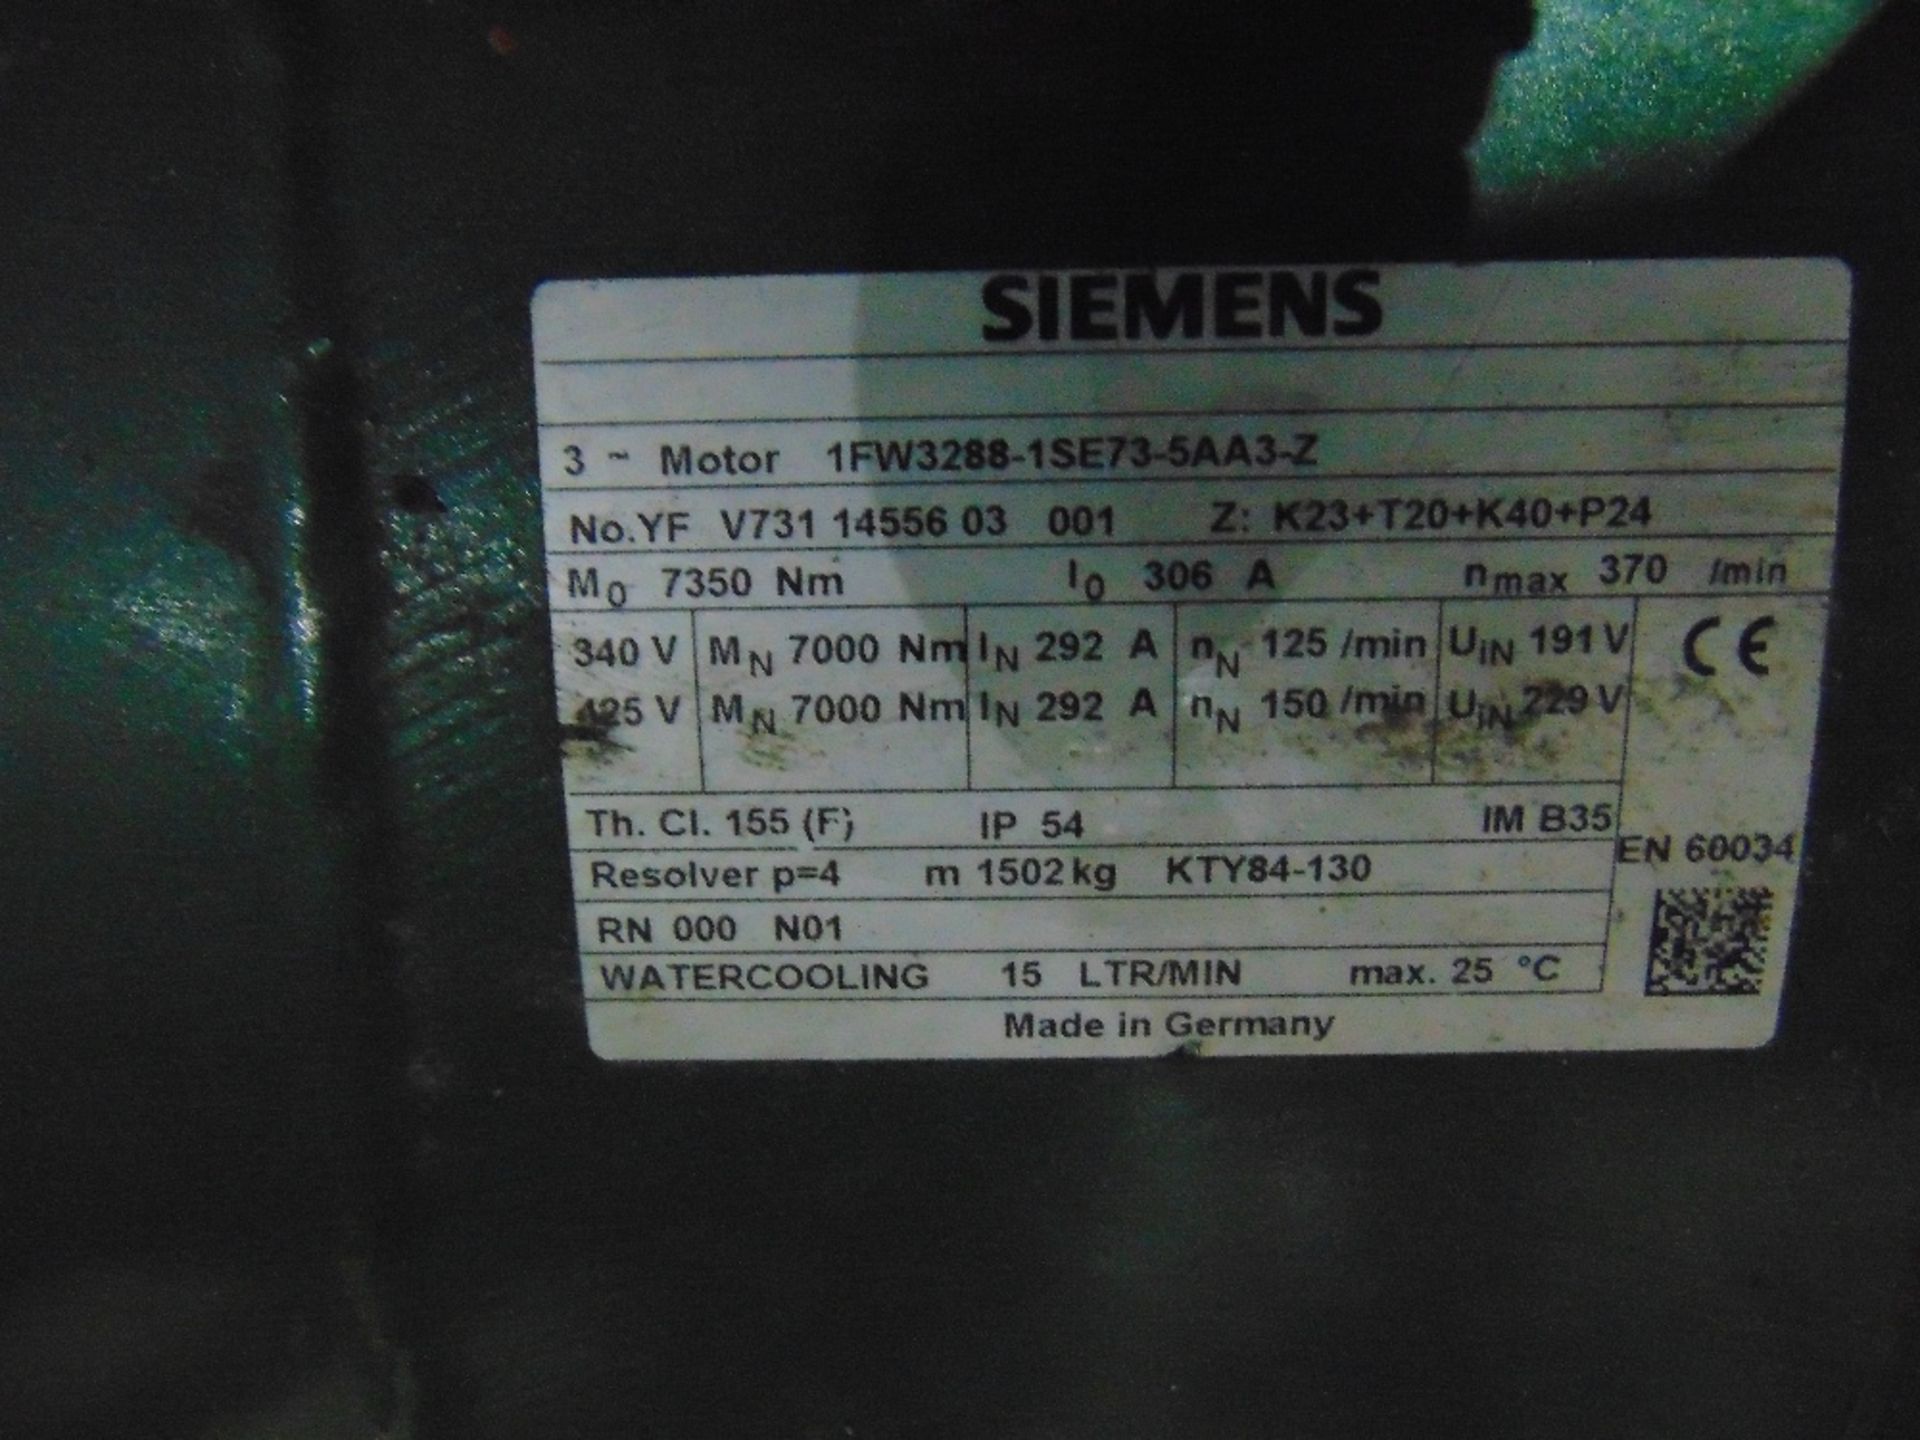 Siemens Watercooling Motor, 130hp - Image 2 of 2